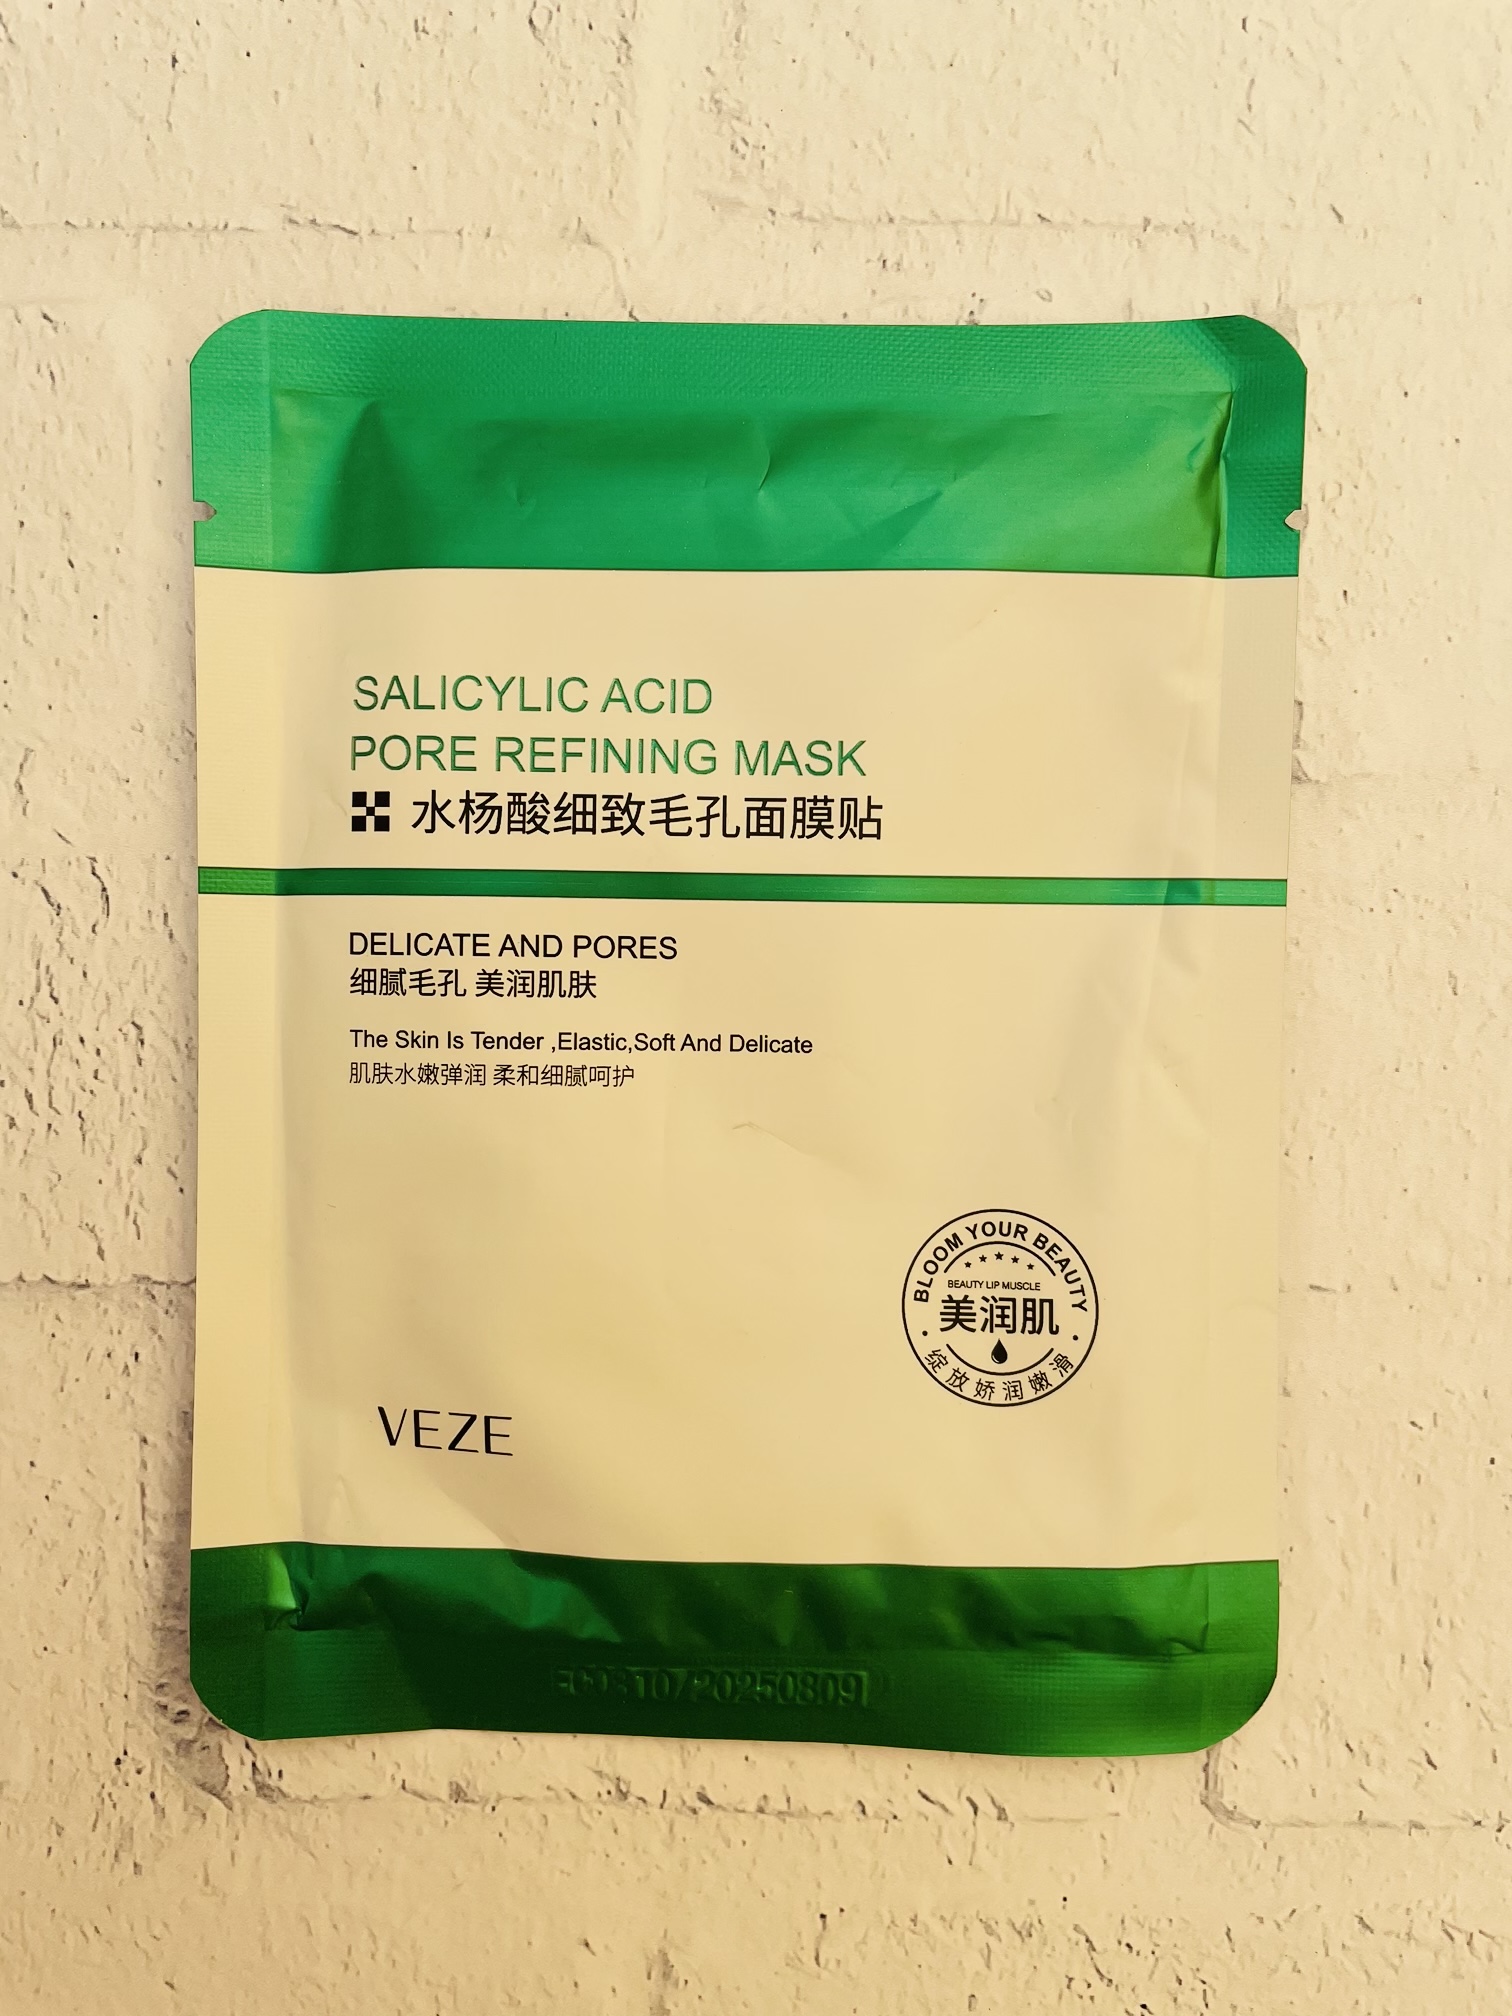 ماسک ورقه ای سالیسیلیک اسید ضد جوش و کنترل کننده چربی ونزن VENZEN